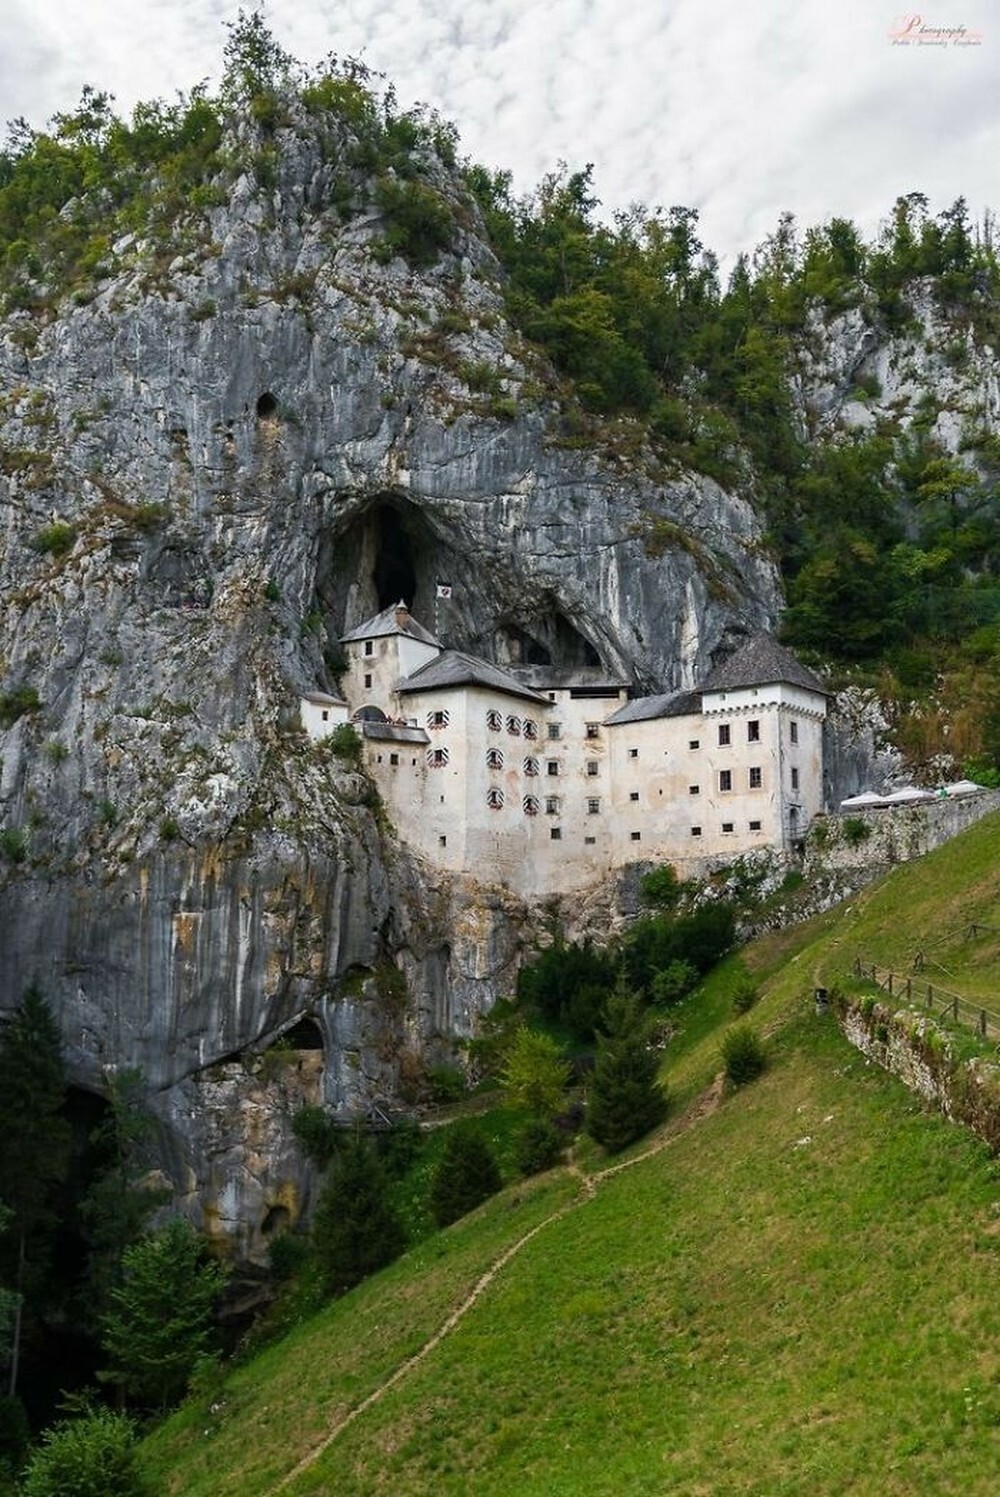 30. Предъямский замок в Словении, встроенный в скалу и прикрывающий собой вход в гигантскую пещеру